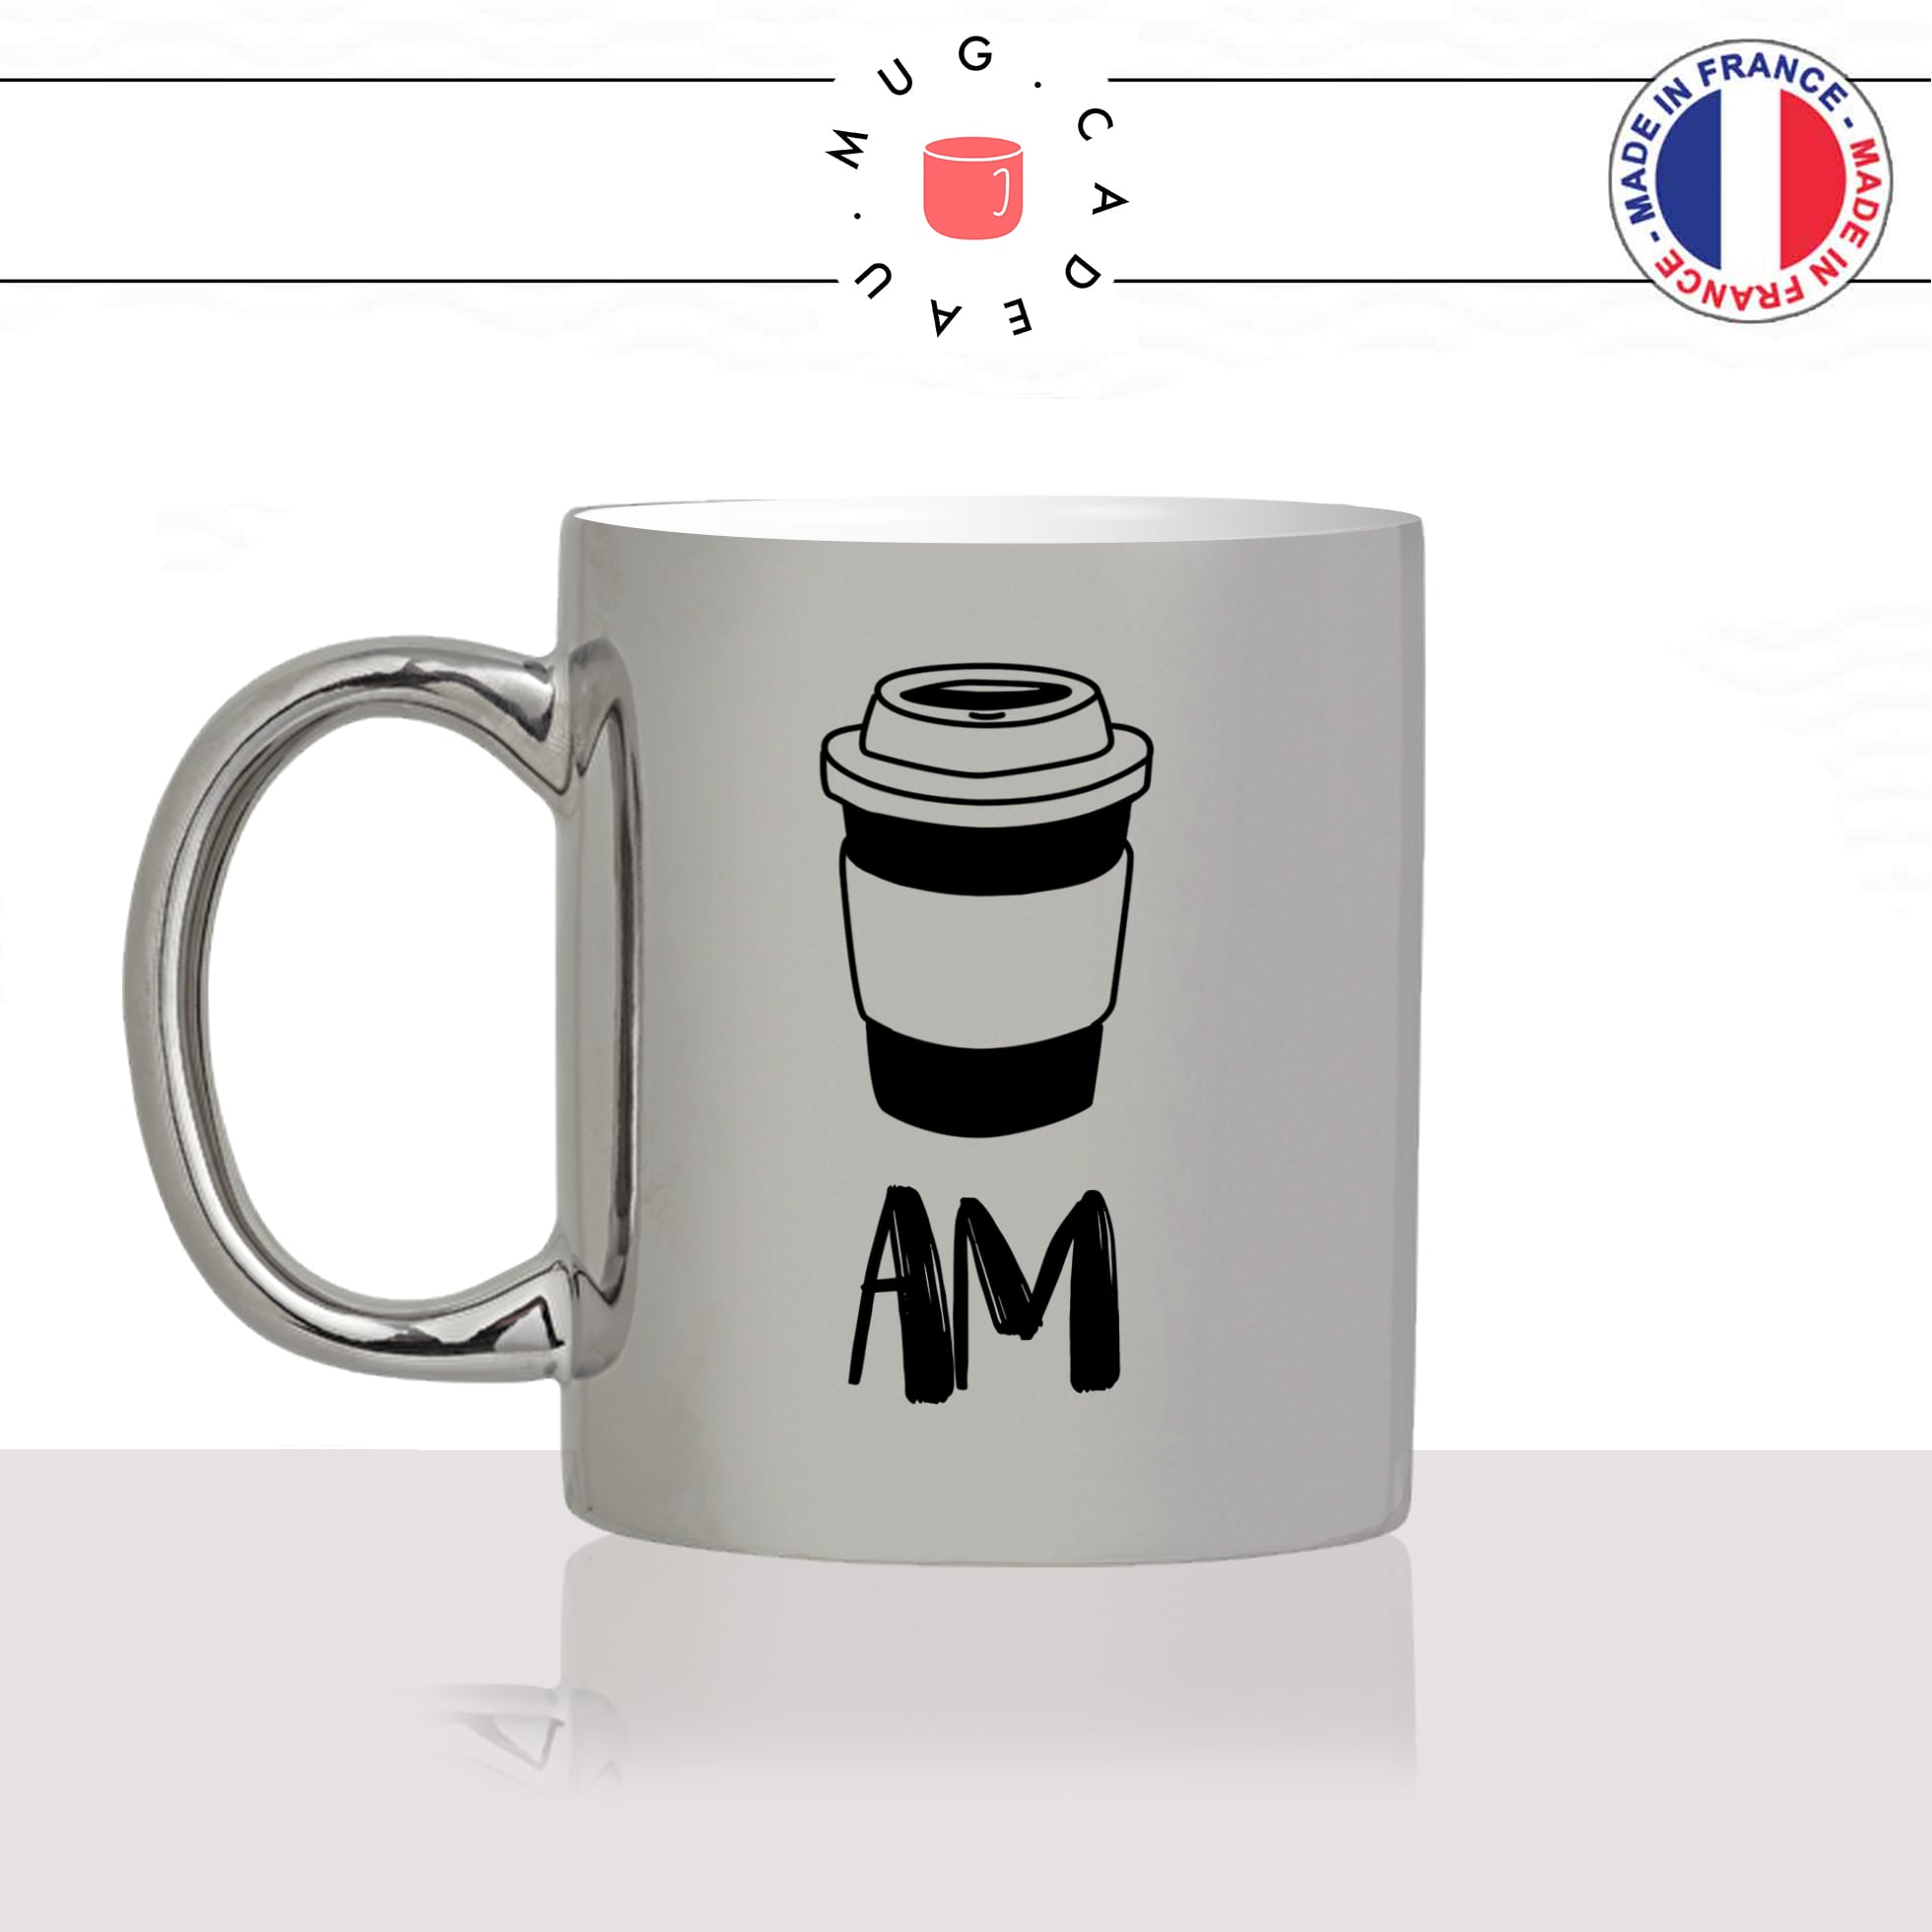 mug-tasse-argent-argenté-silver-am-pm-matin-soir-coffee-apero-vin-rouge-rosé-blanc-verre-a-pied-humour-idée-cadeau-fun-cool-café-thé-min